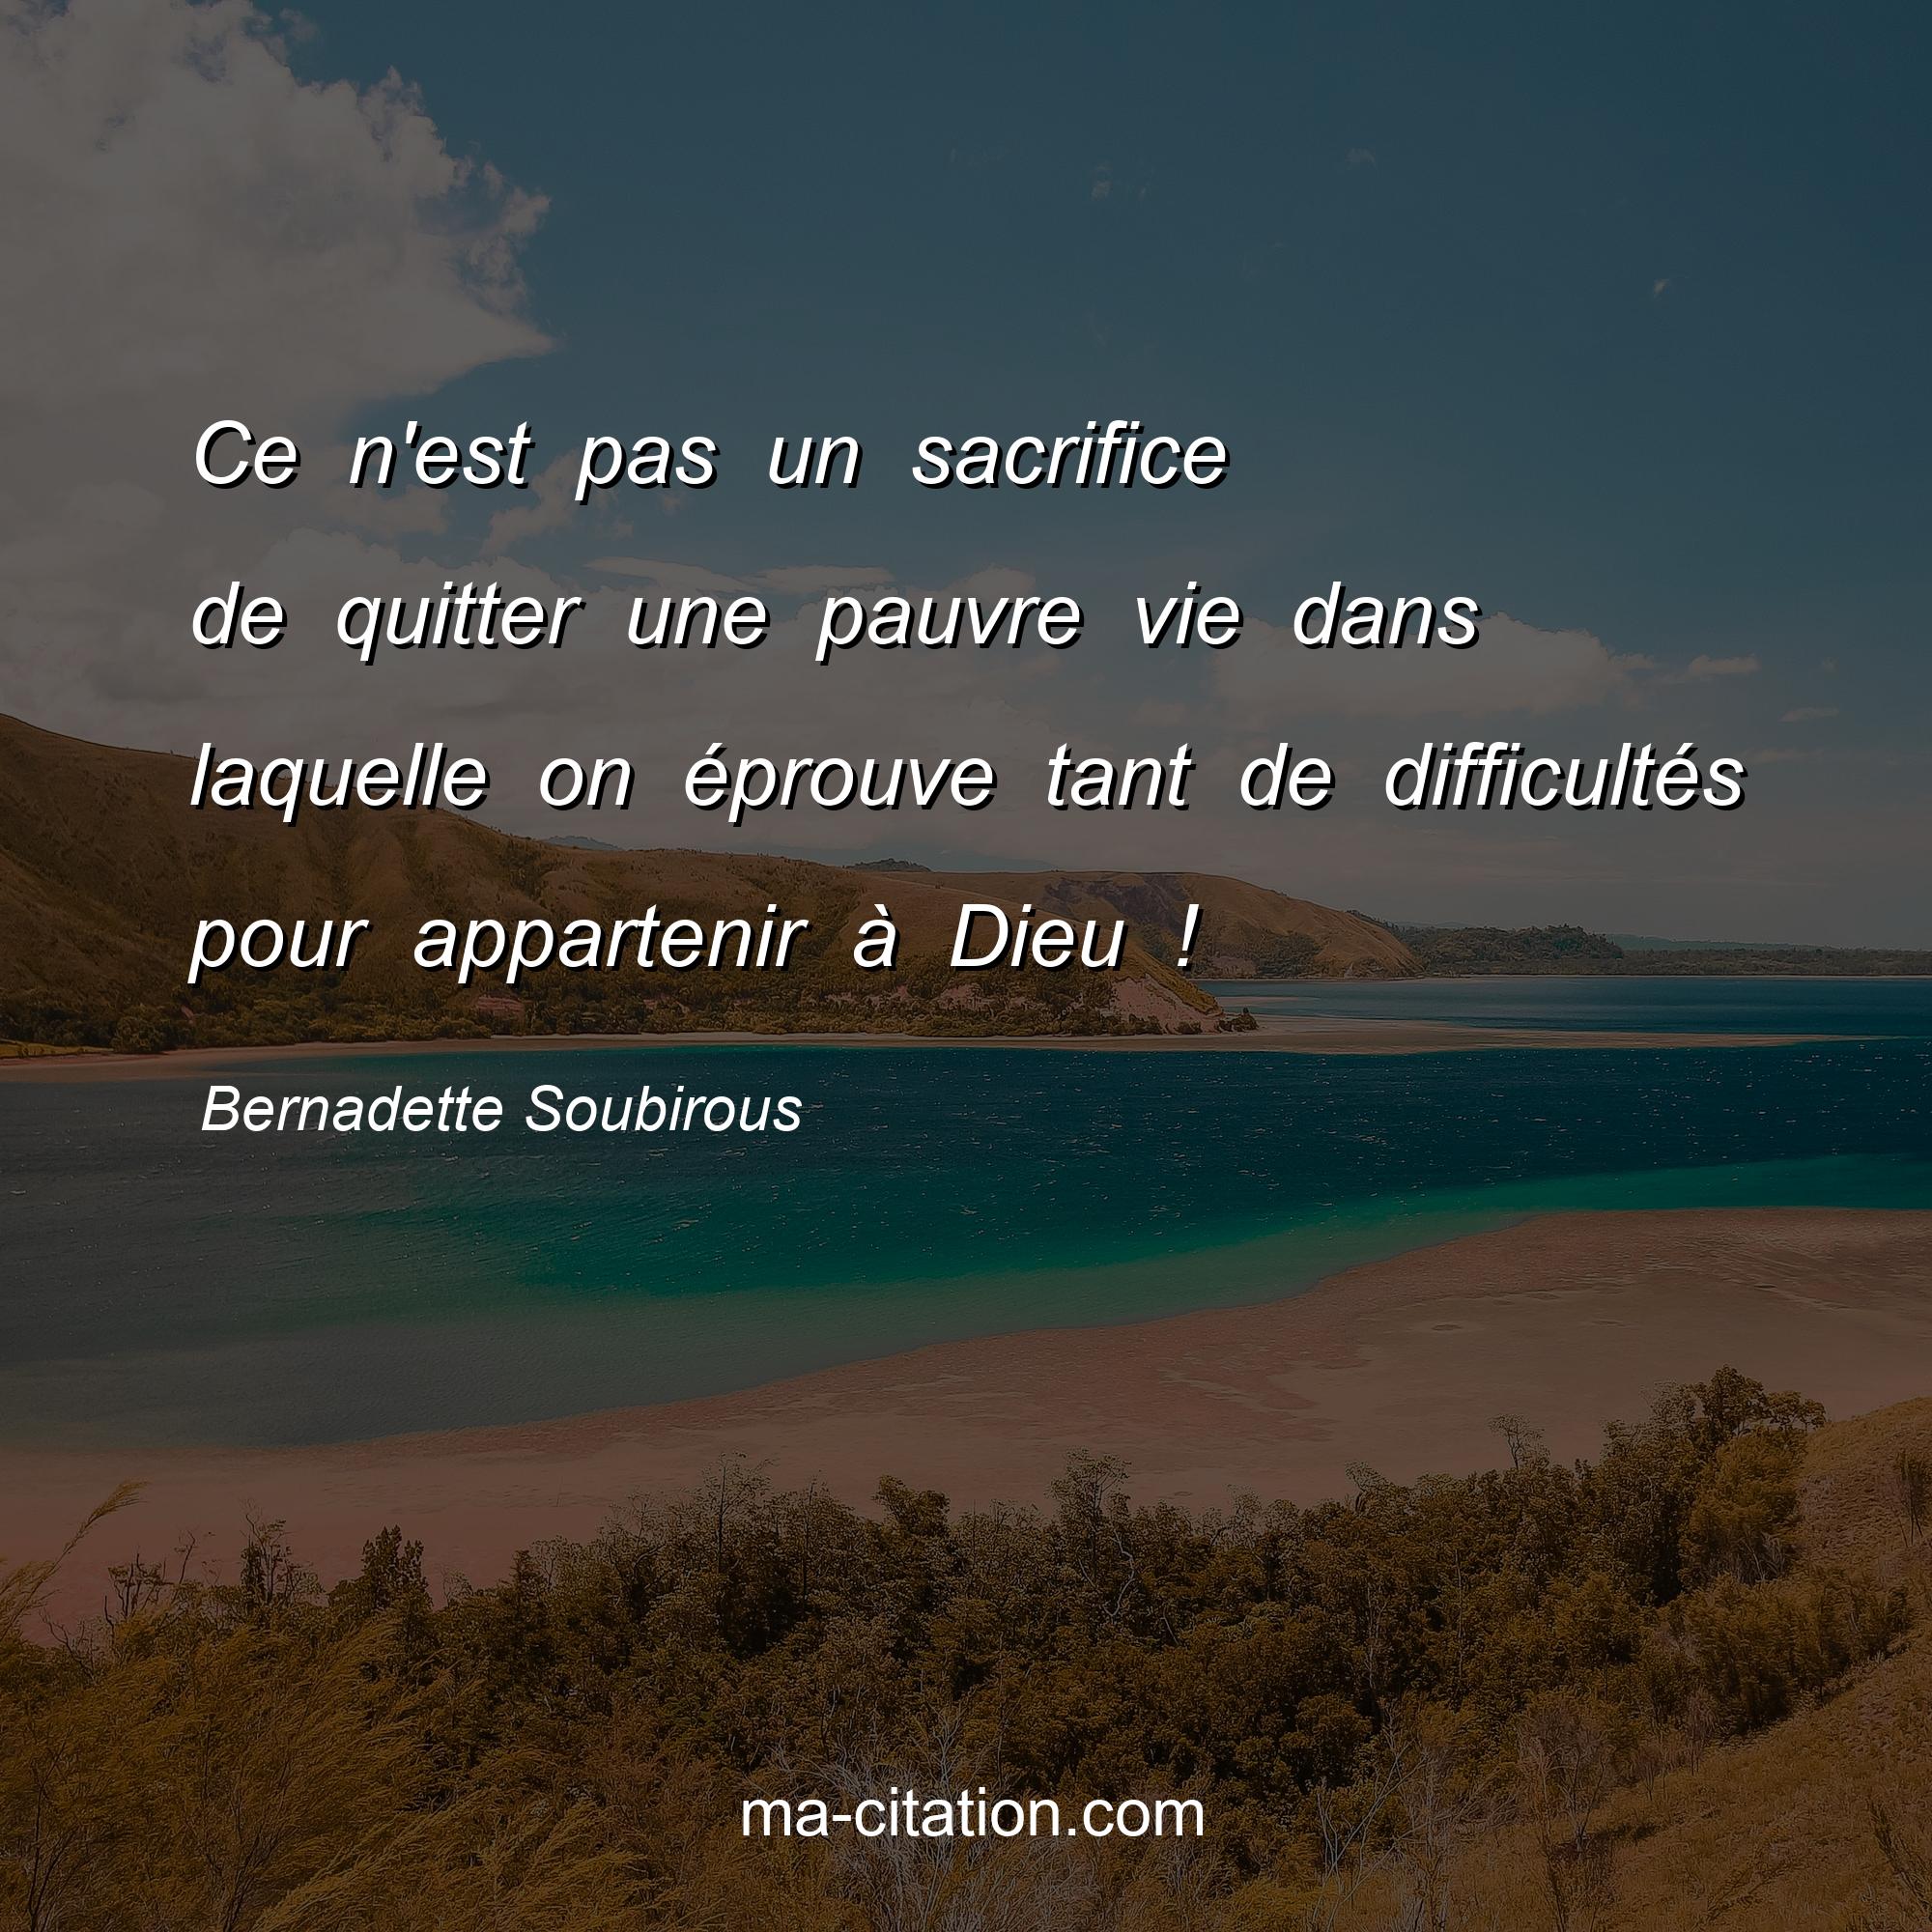 Bernadette Soubirous : Ce n'est pas un sacrifice de quitter une pauvre vie dans laquelle on éprouve tant de difficultés pour appartenir à Dieu !